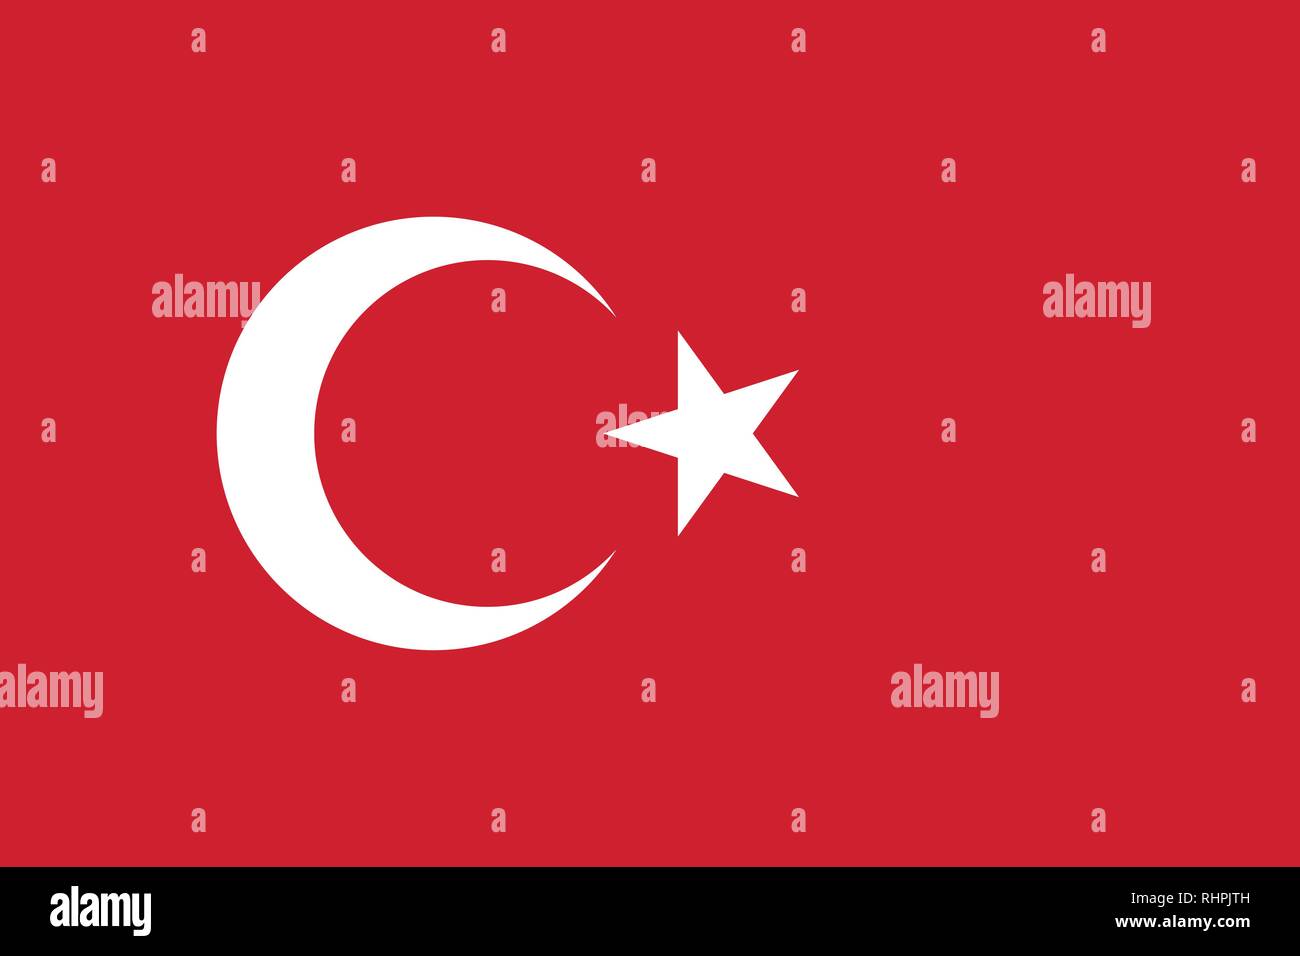 Immagine vettoriale per la bandiera della Turchia. Sulla base del funzionario e esatta bandiera turca dimensioni (3:2) & colori (186C e bianco) Illustrazione Vettoriale